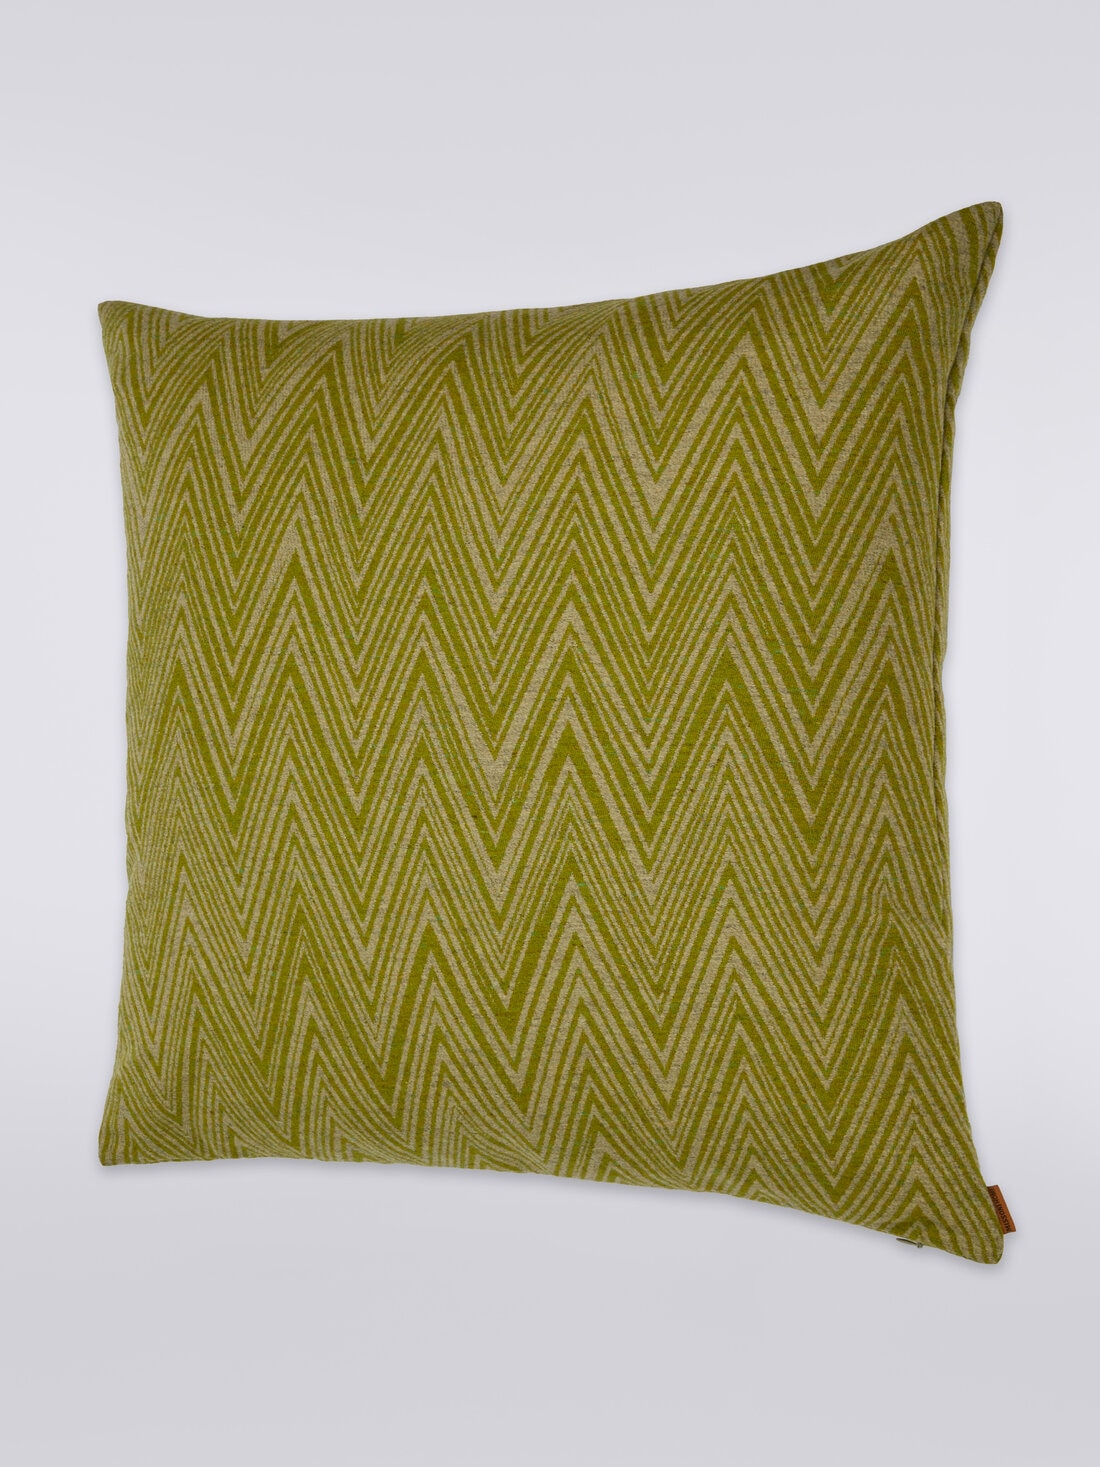 Bridgetown cushion 60x60 cm, Multicoloured  - 8051275581758 - 1